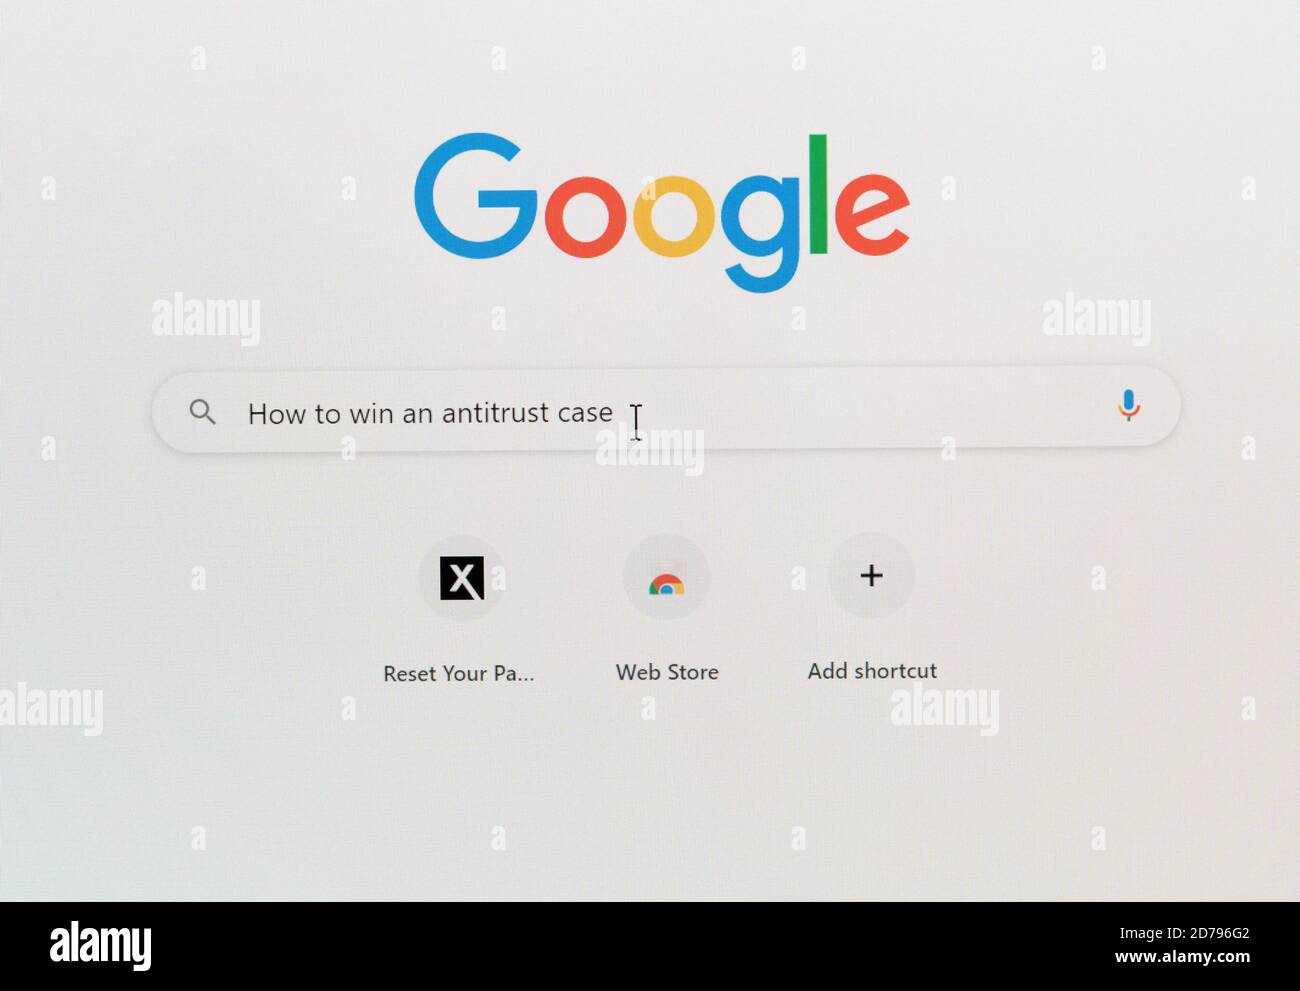 Morgantown, WV - 21 octobre 2020 : gros plan de l'écran d'ordinateur avec question sur la façon de gagner un cas anti-trust dans la boîte de recherche Google Banque D'Images